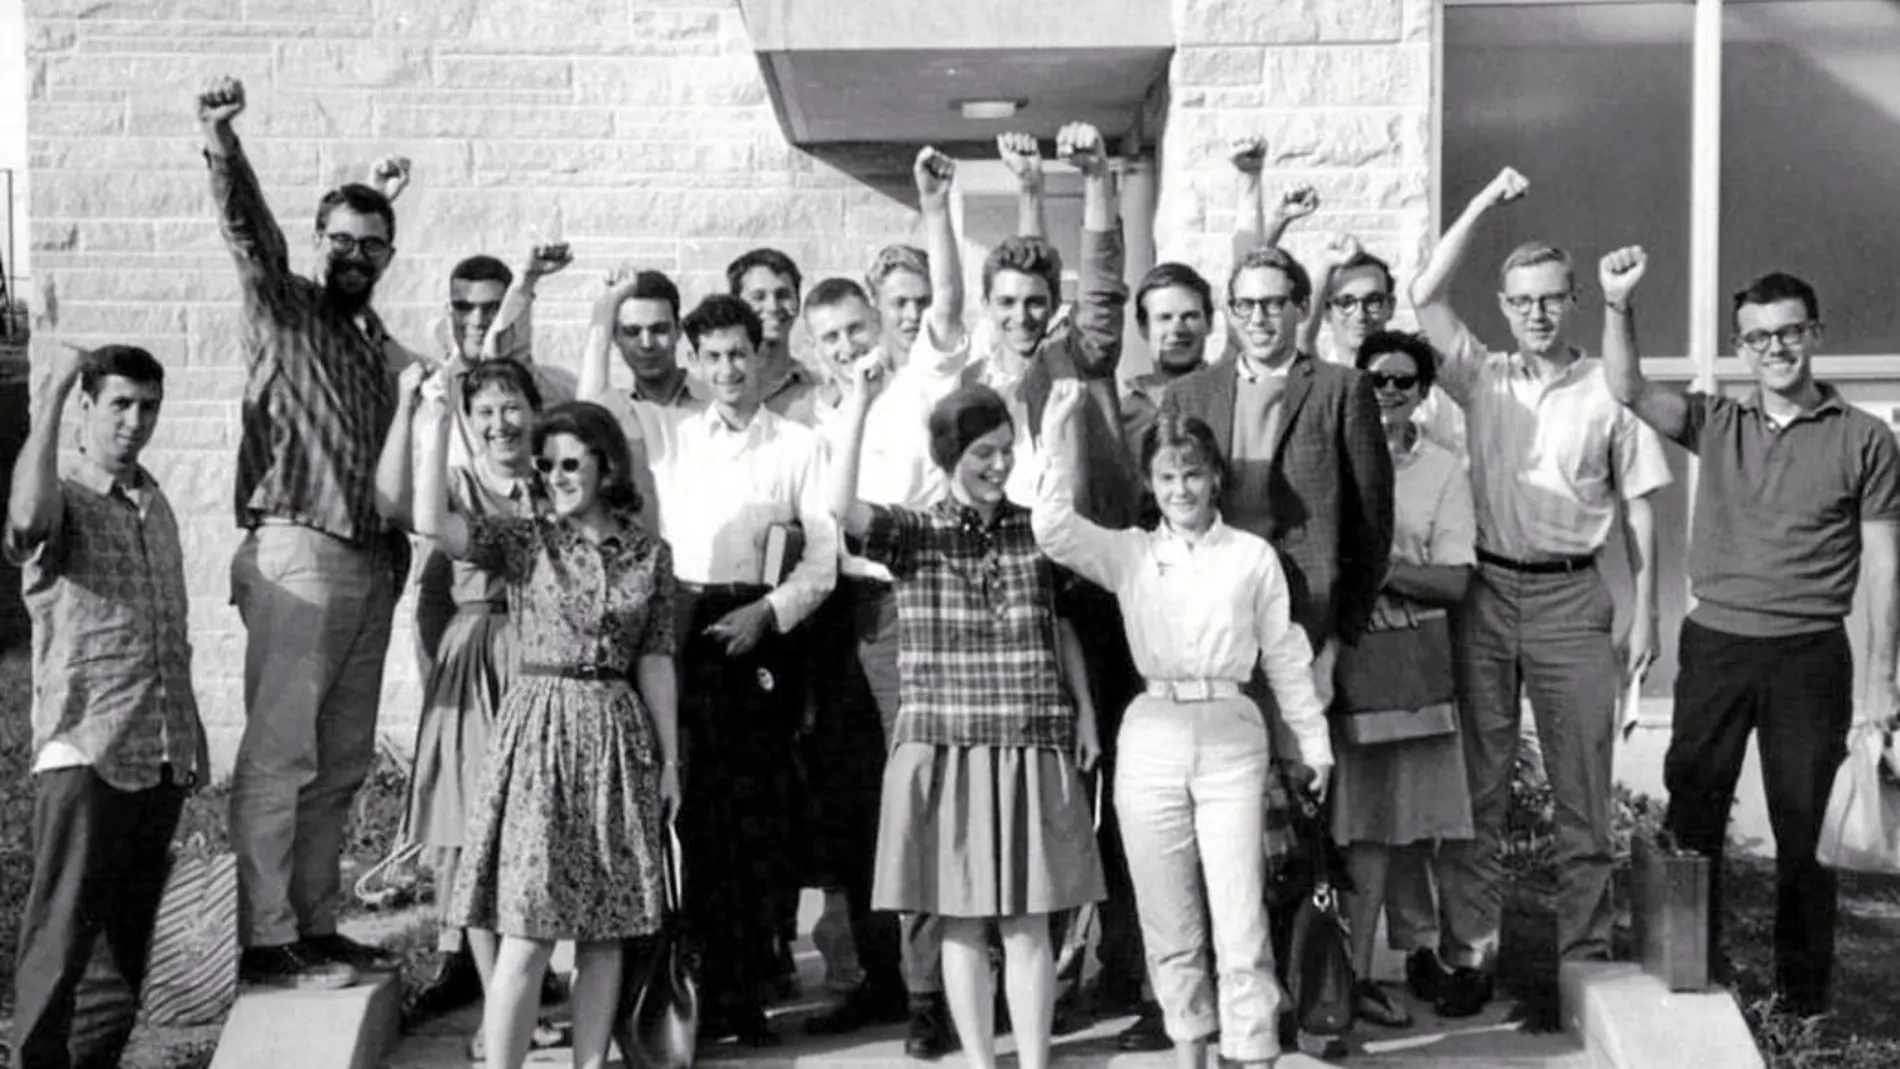 Un grupo de jóvenes perteneciente al Students for a Democracy (arriba, una chapa del movimiento), de ideología marxista, en Washington